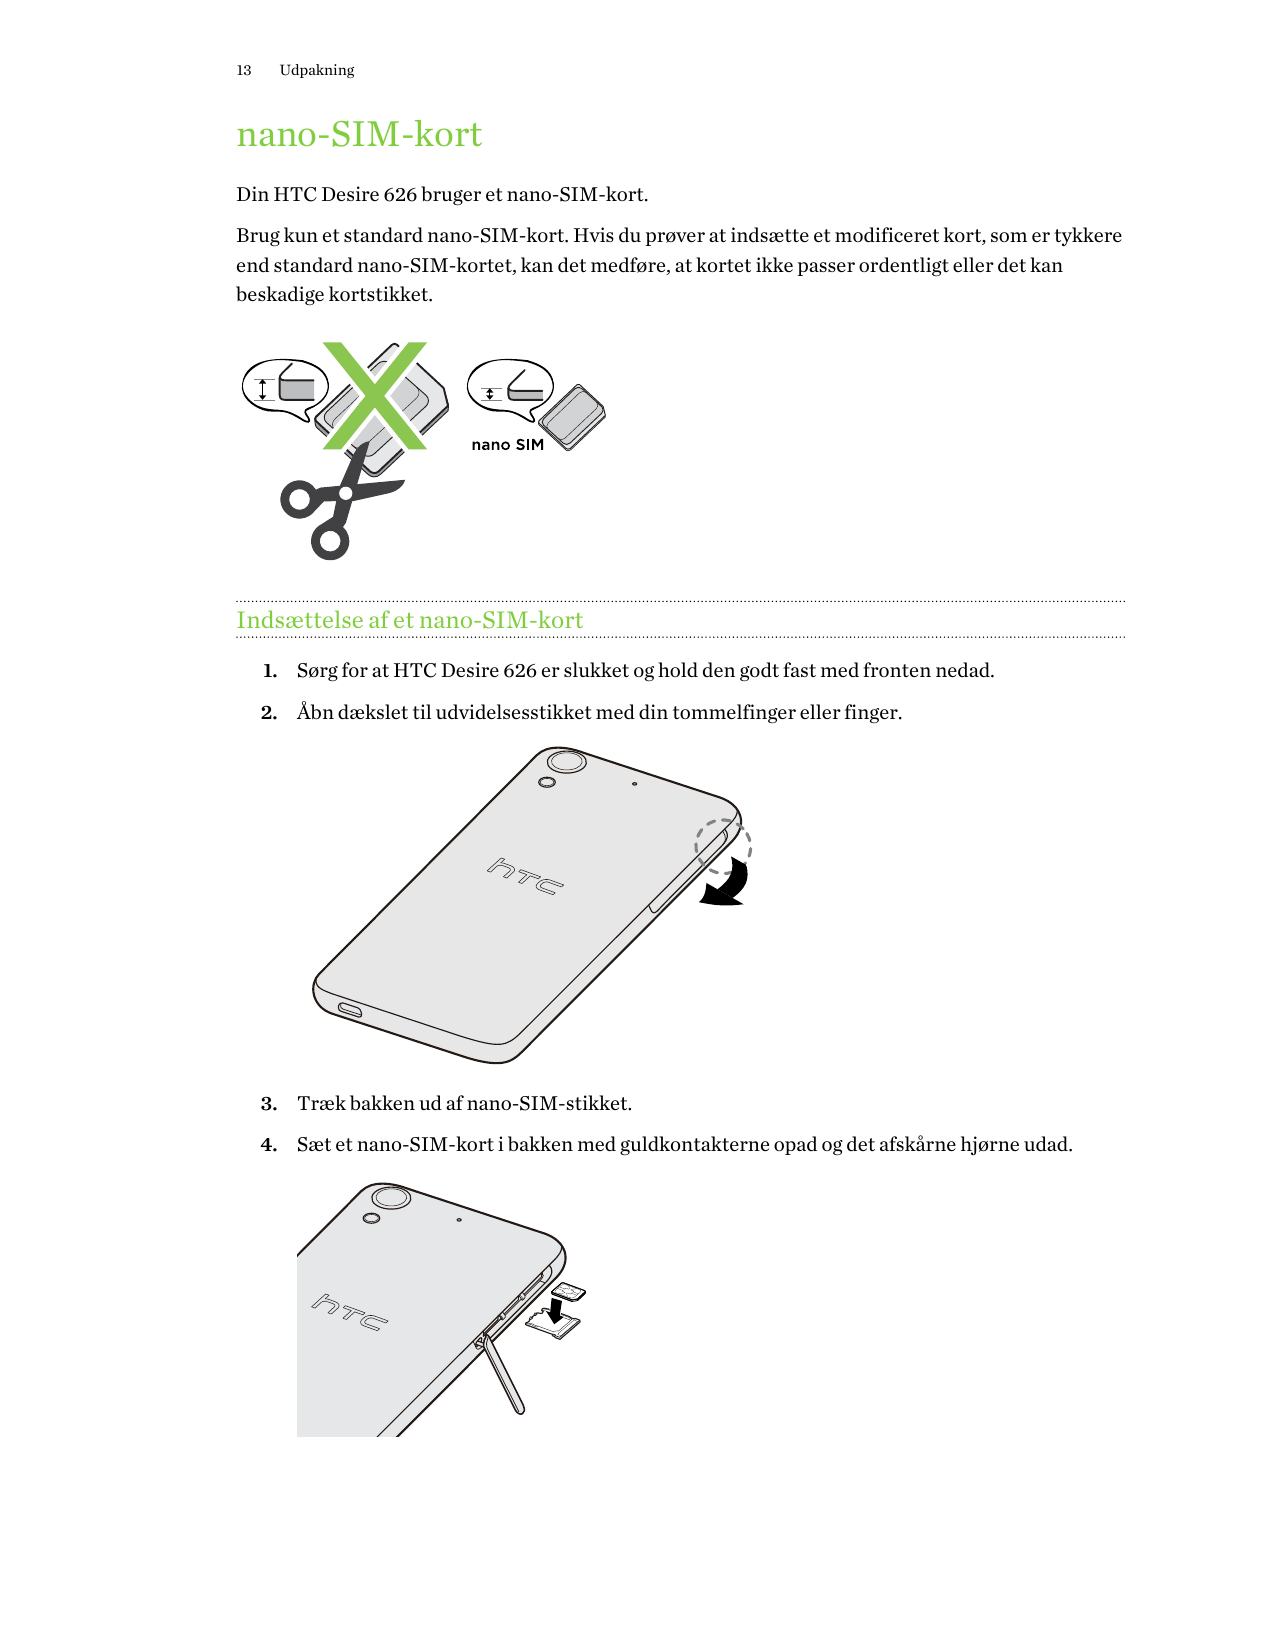 13Udpakningnano-SIM-kortDin HTC Desire 626 bruger et nano-SIM-kort.Brug kun et standard nano-SIM-kort. Hvis du prøver at indsætt